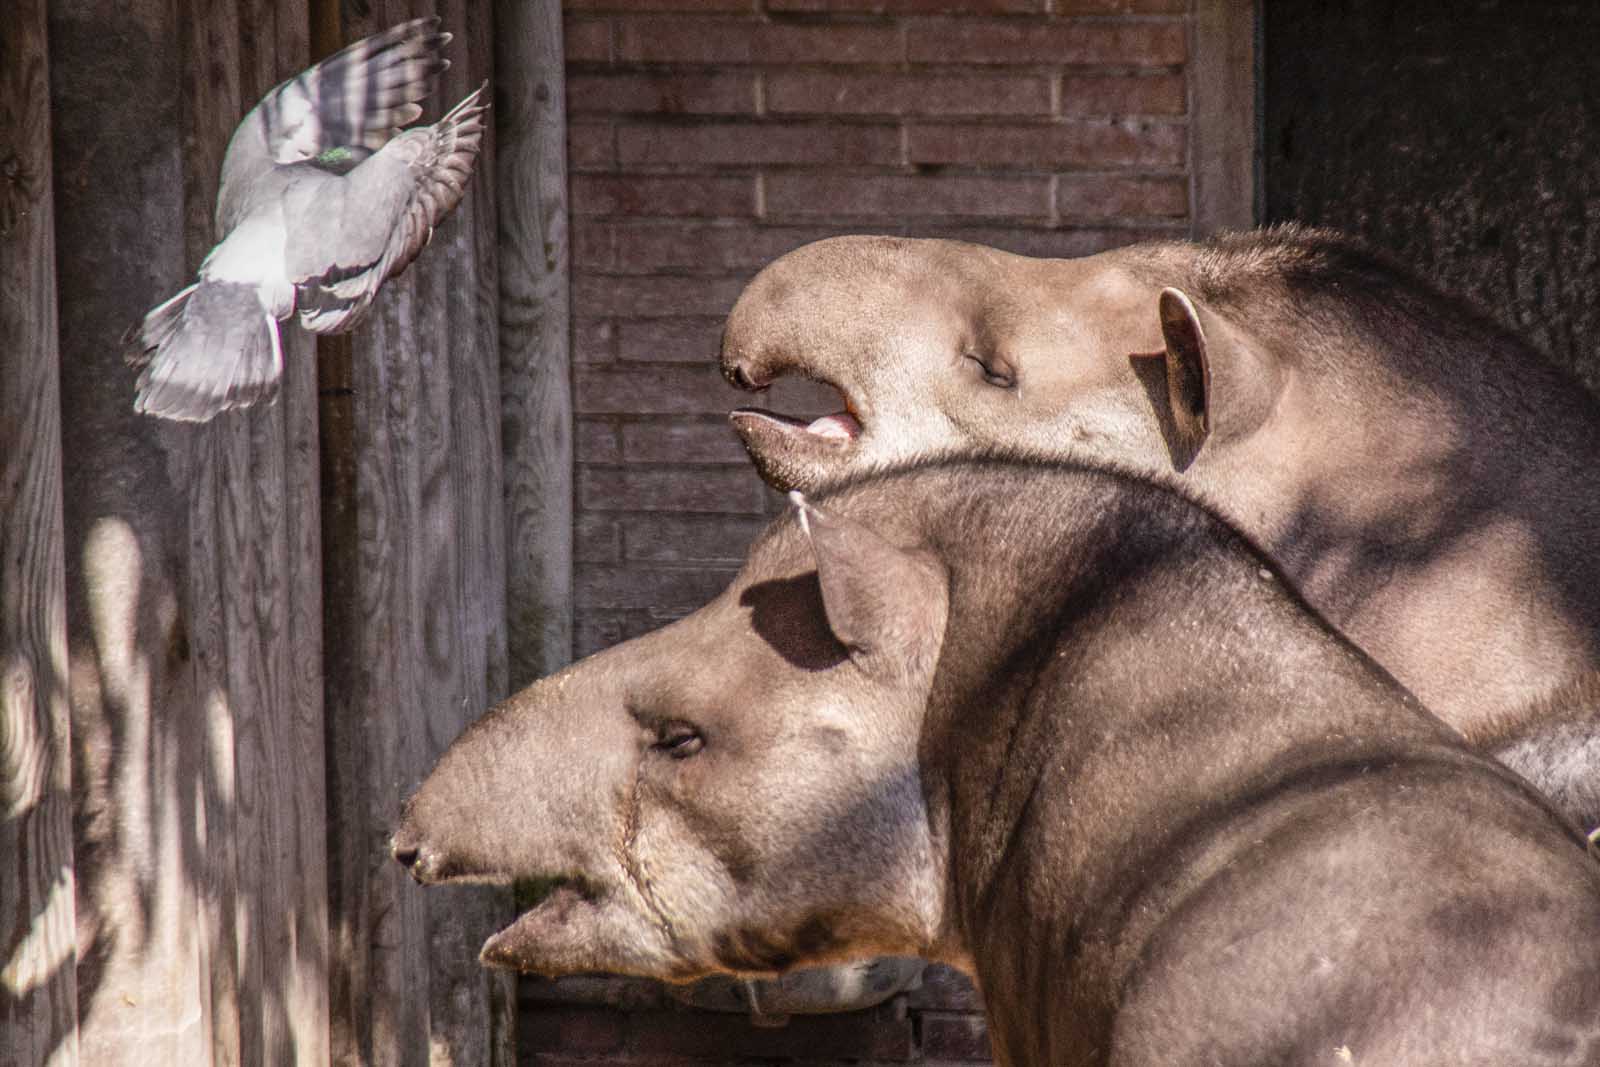 Tapiro sudamericano ha una La lunghezza varia da 1.7 a 2 metri, l’altezza da 77 a 108 cm. Il maschio può pesare fino a 300 kg. Una delle caratteristiche distintive di questa specie è la presenza di una proboscide flessibile, formata dal labbro superiore e dal naso.